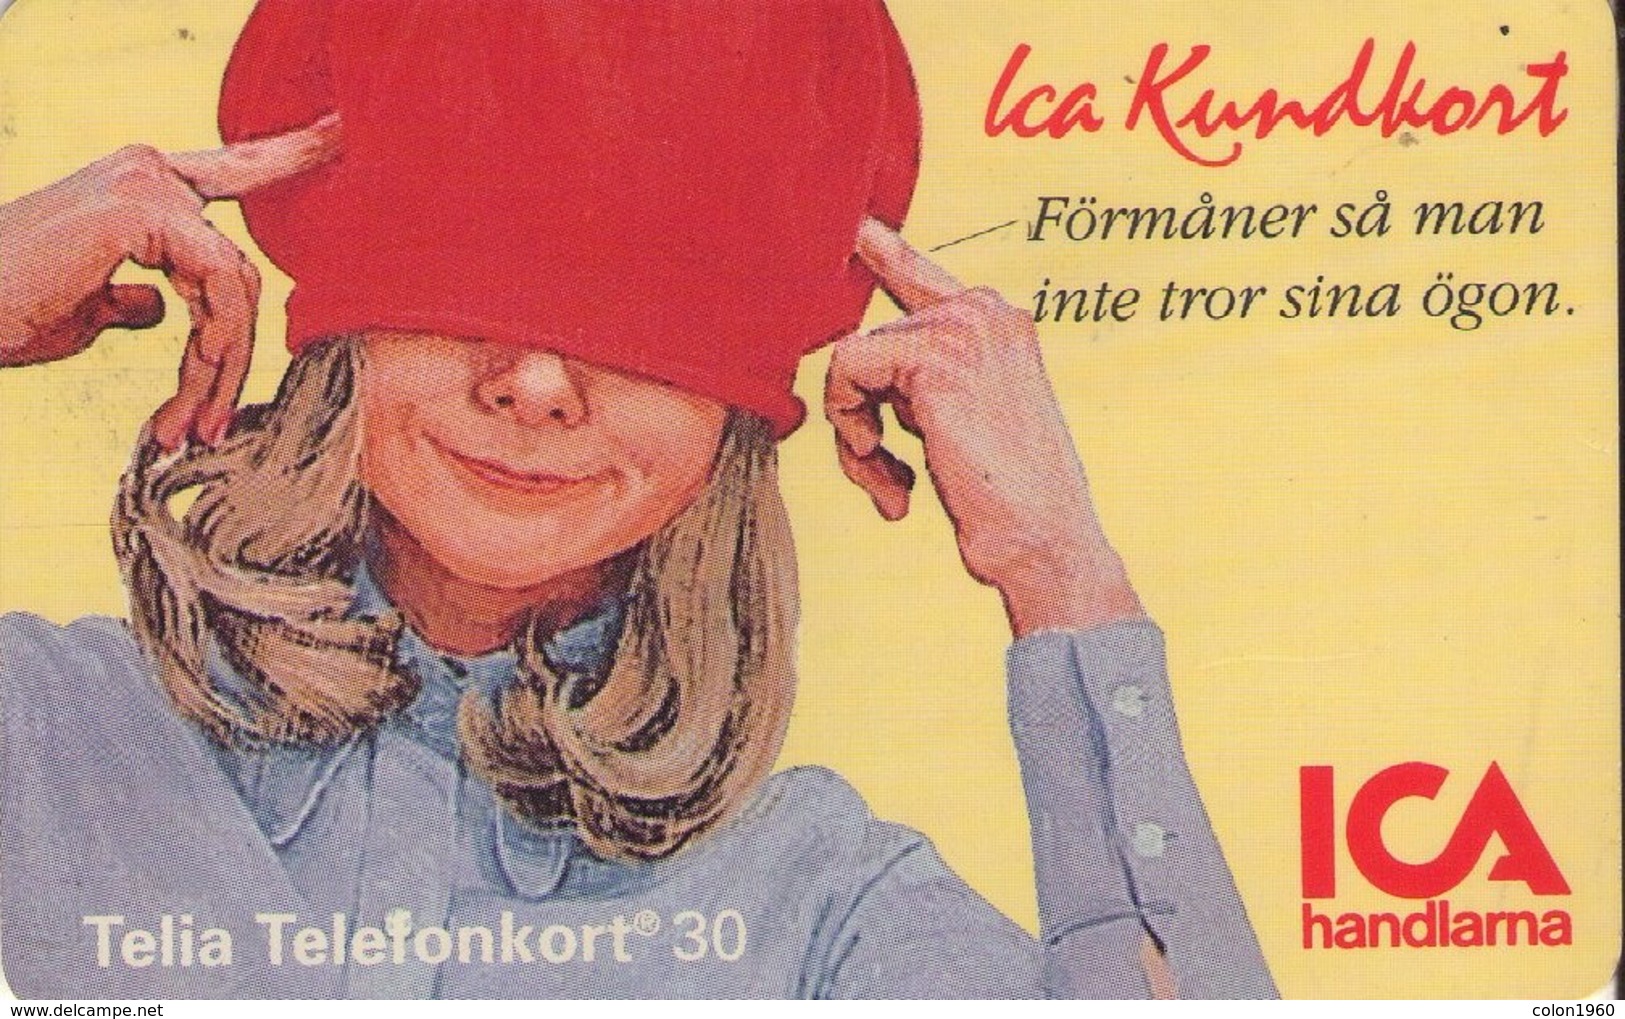 SUECIA. SE-TEL-030-0014A. ICA Member Card - Ica Kundkort. 1994-04. (565) - Suecia